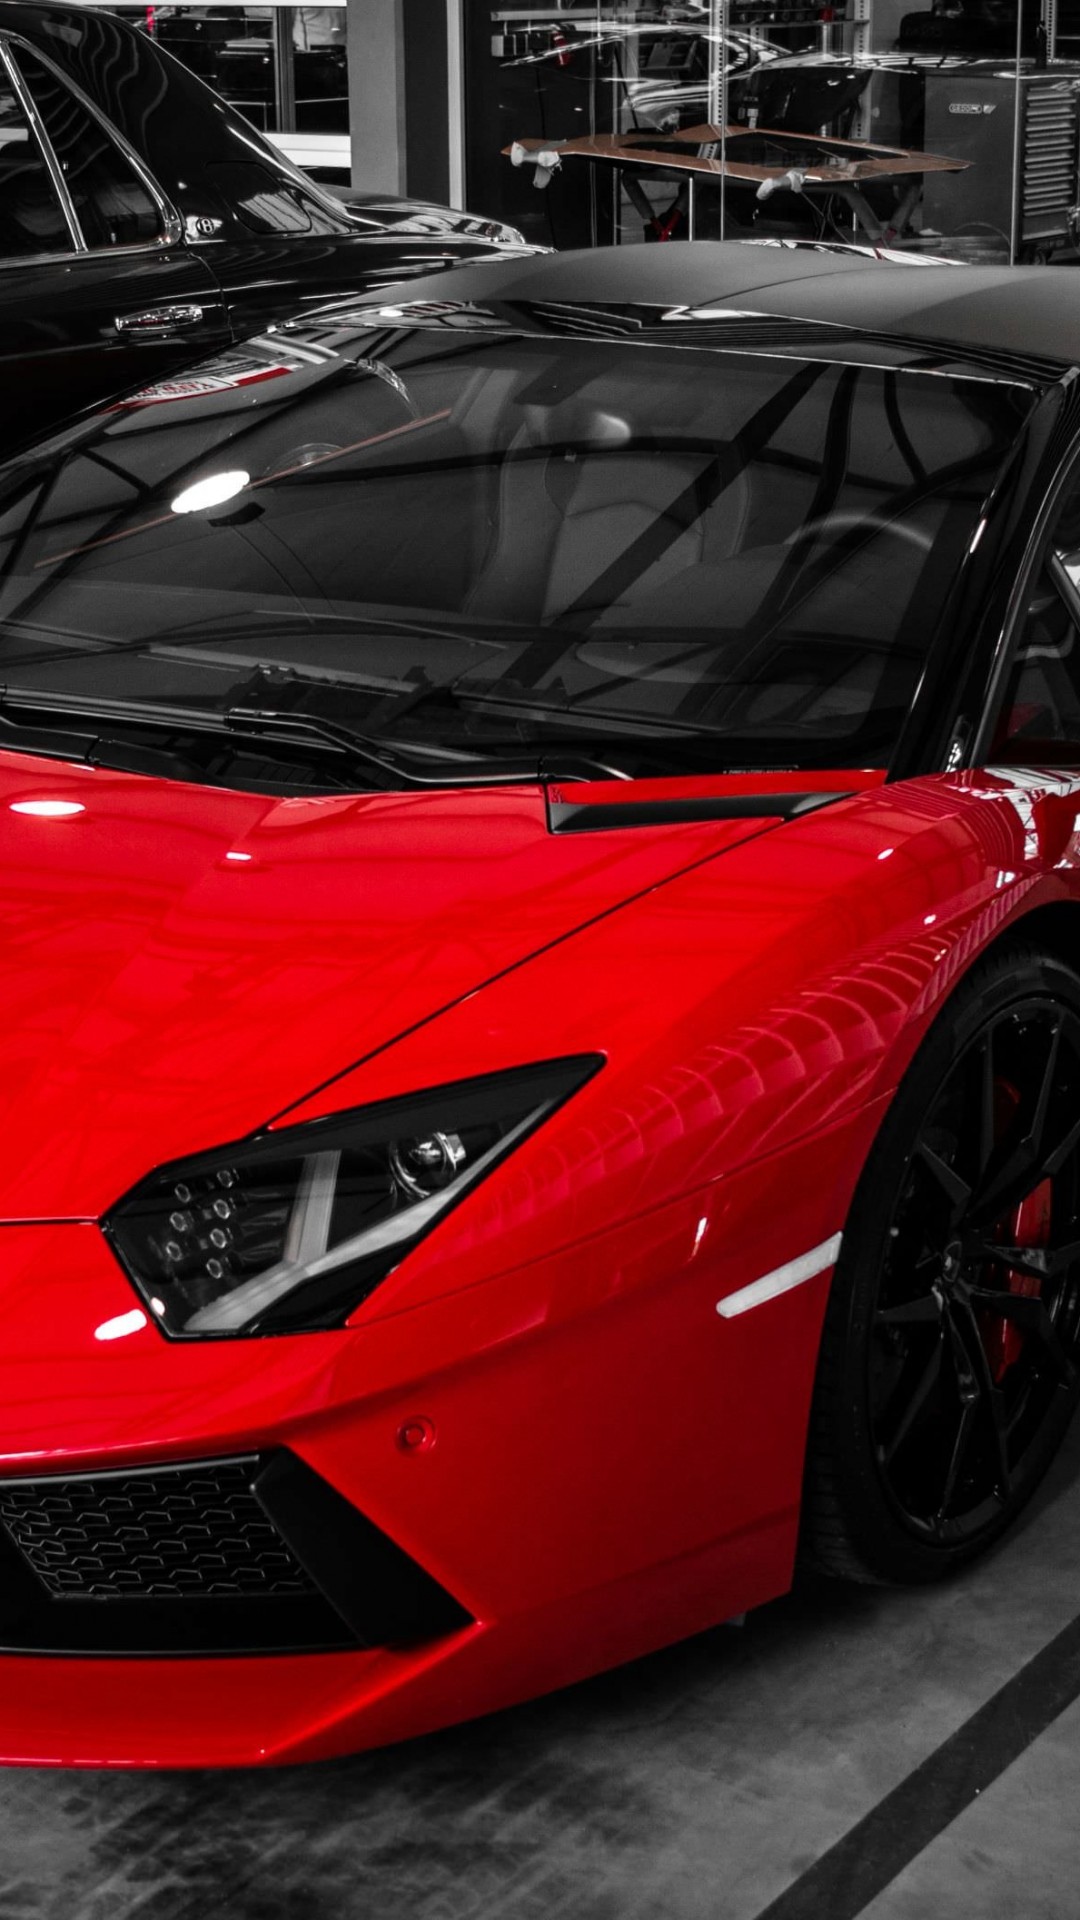 Red Lamborghini Aventador Wallpaper for SONY Xperia Z2